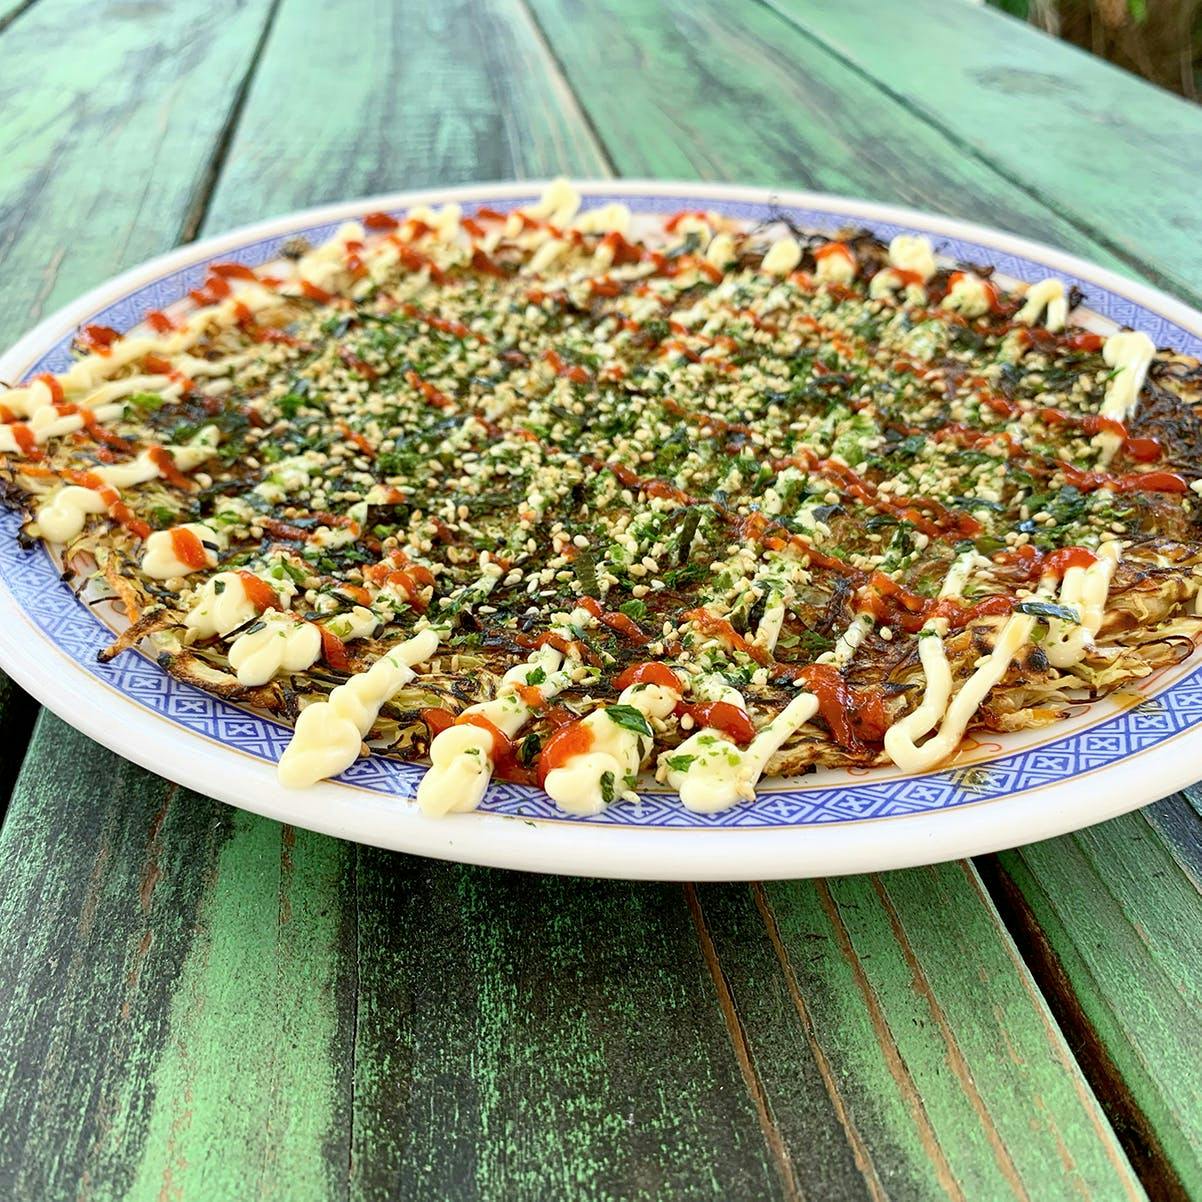 Okonomiyaki Savory Pancake + Topping Kit - 3 Pack